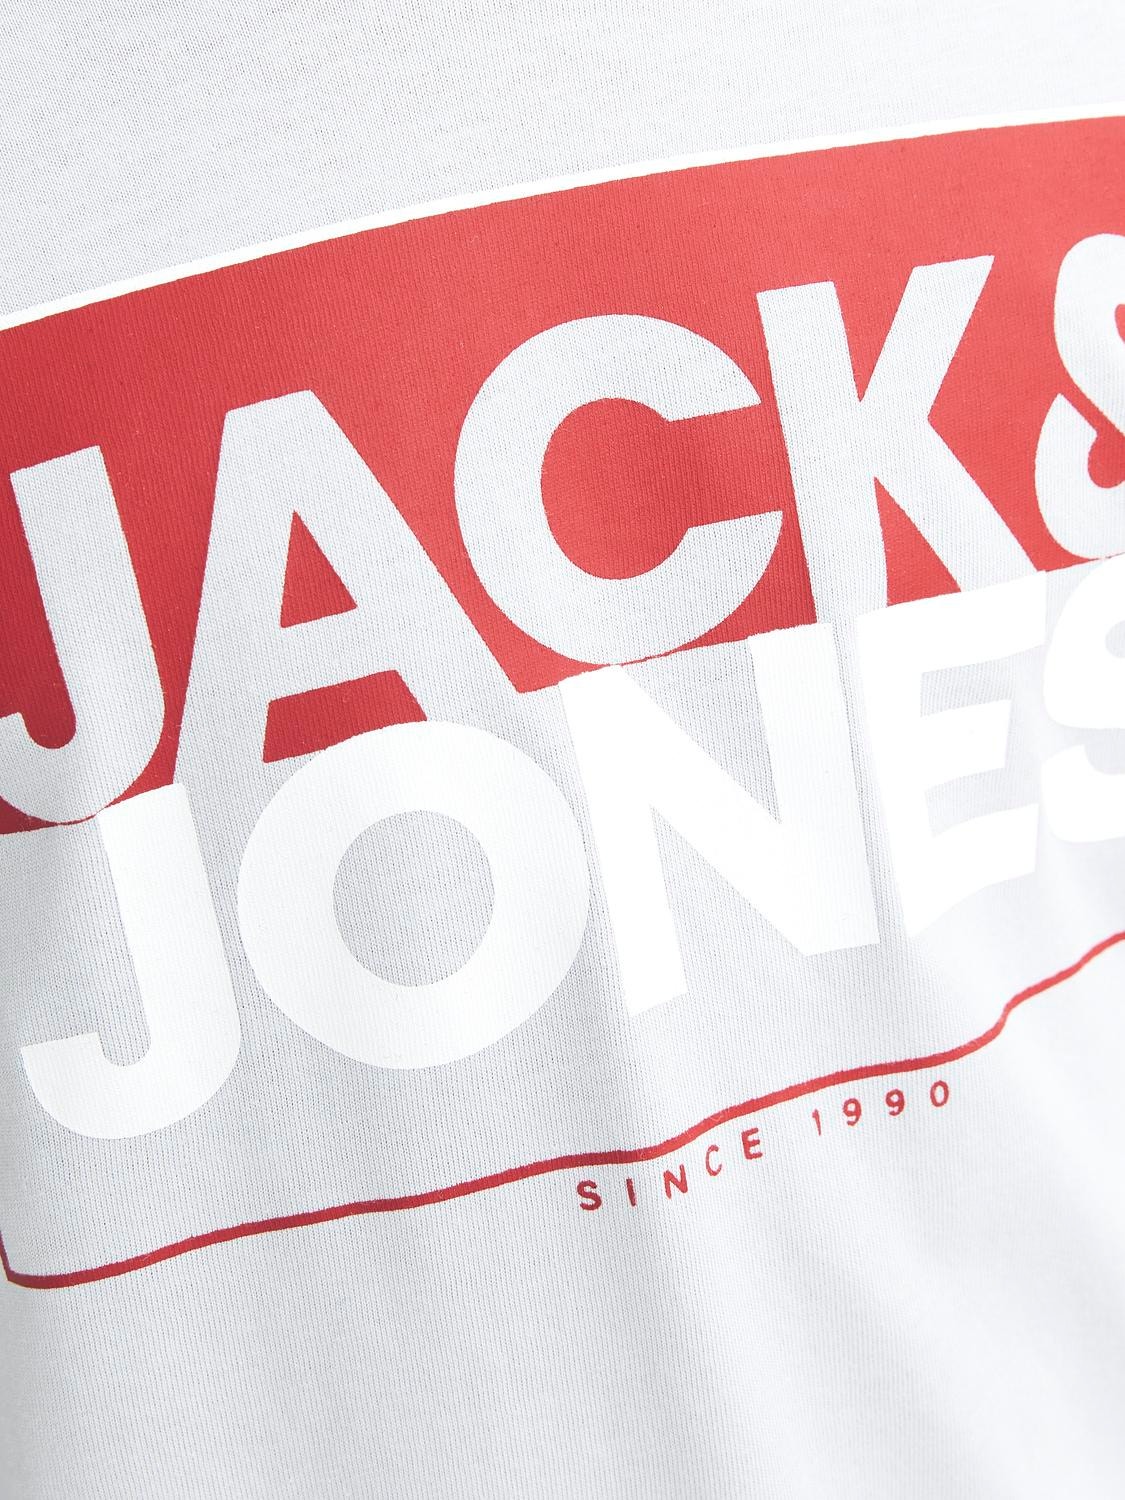 Jack & Jones Logo T-shirt Für jungs -High-rise - 12251462